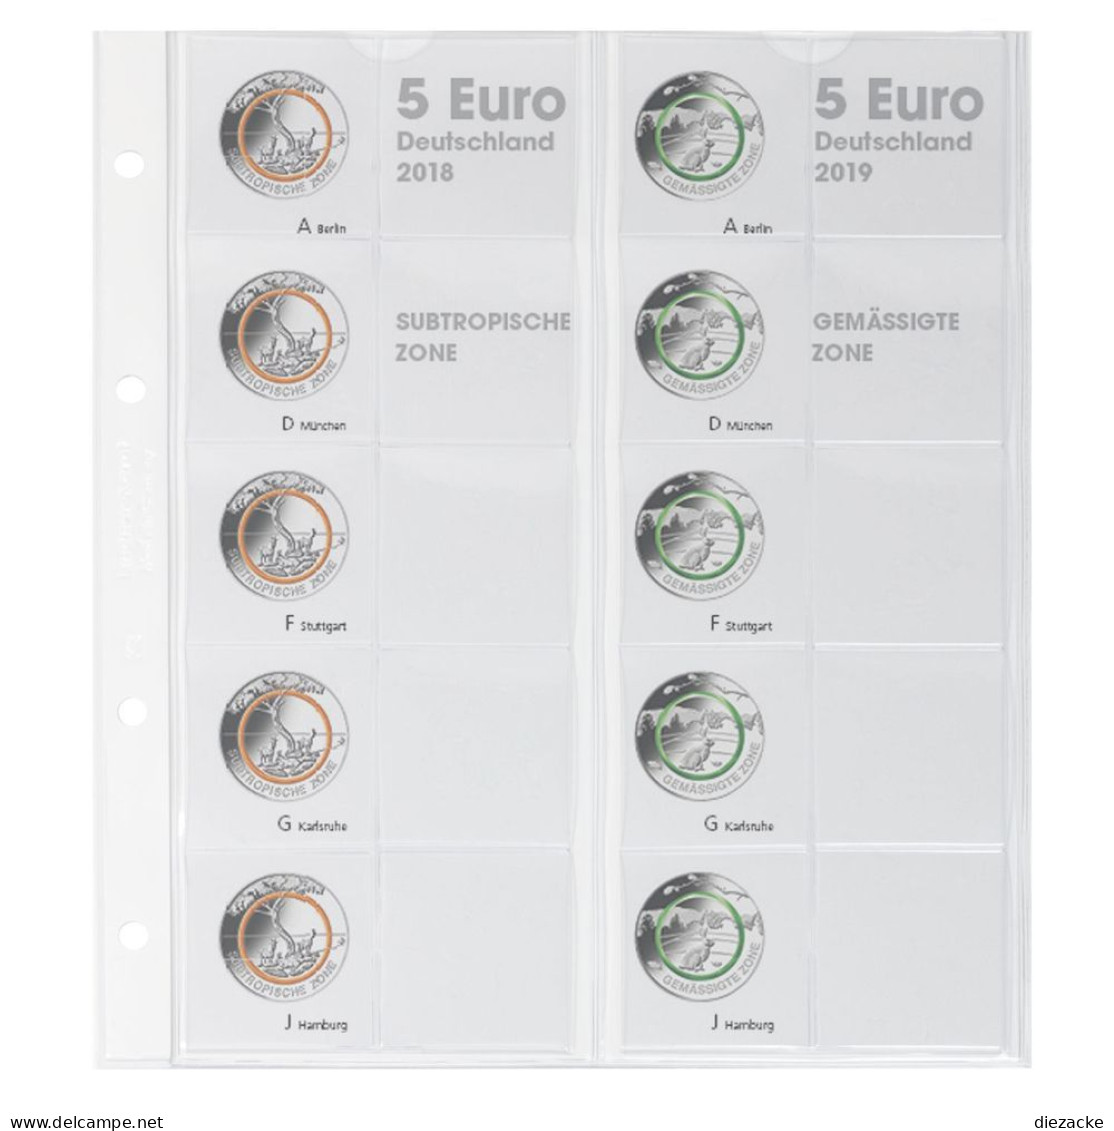 Lindner Vordruckblatt Karat Für 5 Euro-Münzen Polymerring 1119-2 Neu - Zubehör